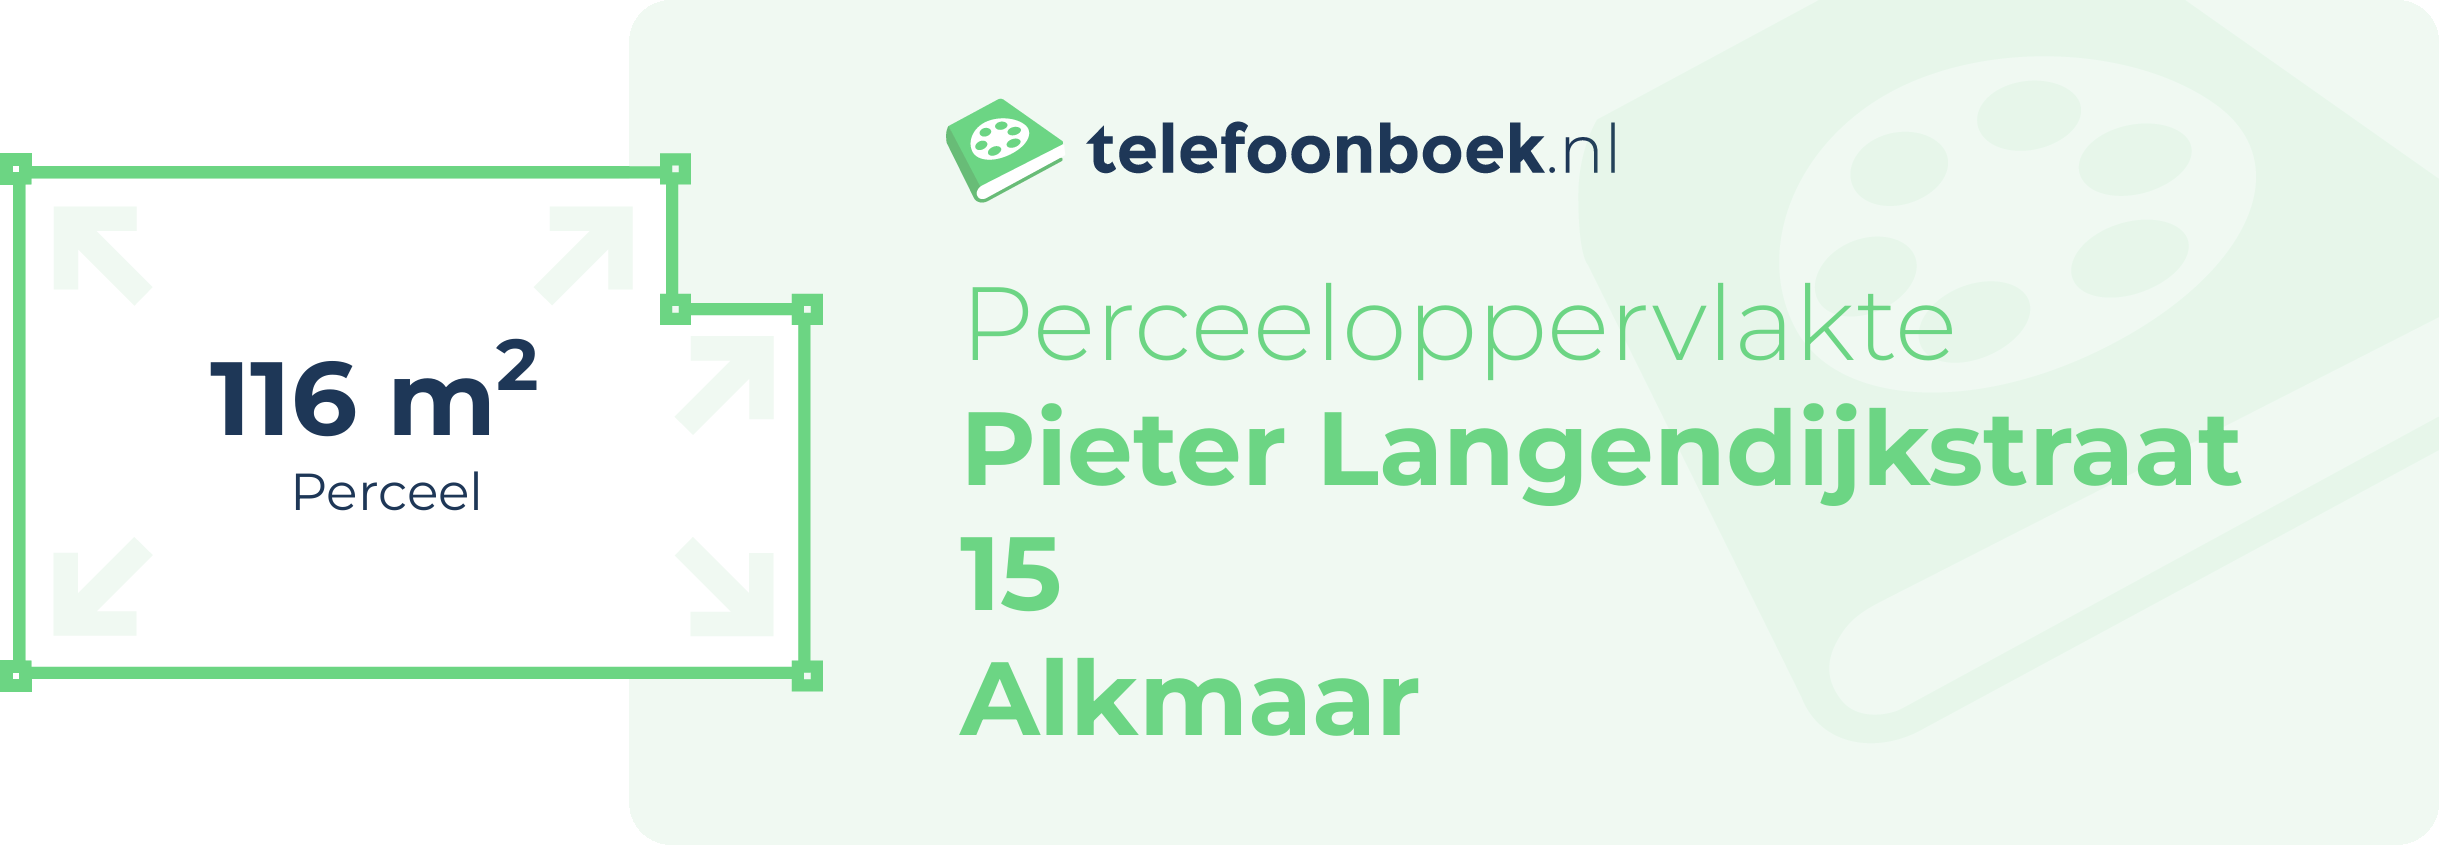 Perceeloppervlakte Pieter Langendijkstraat 15 Alkmaar